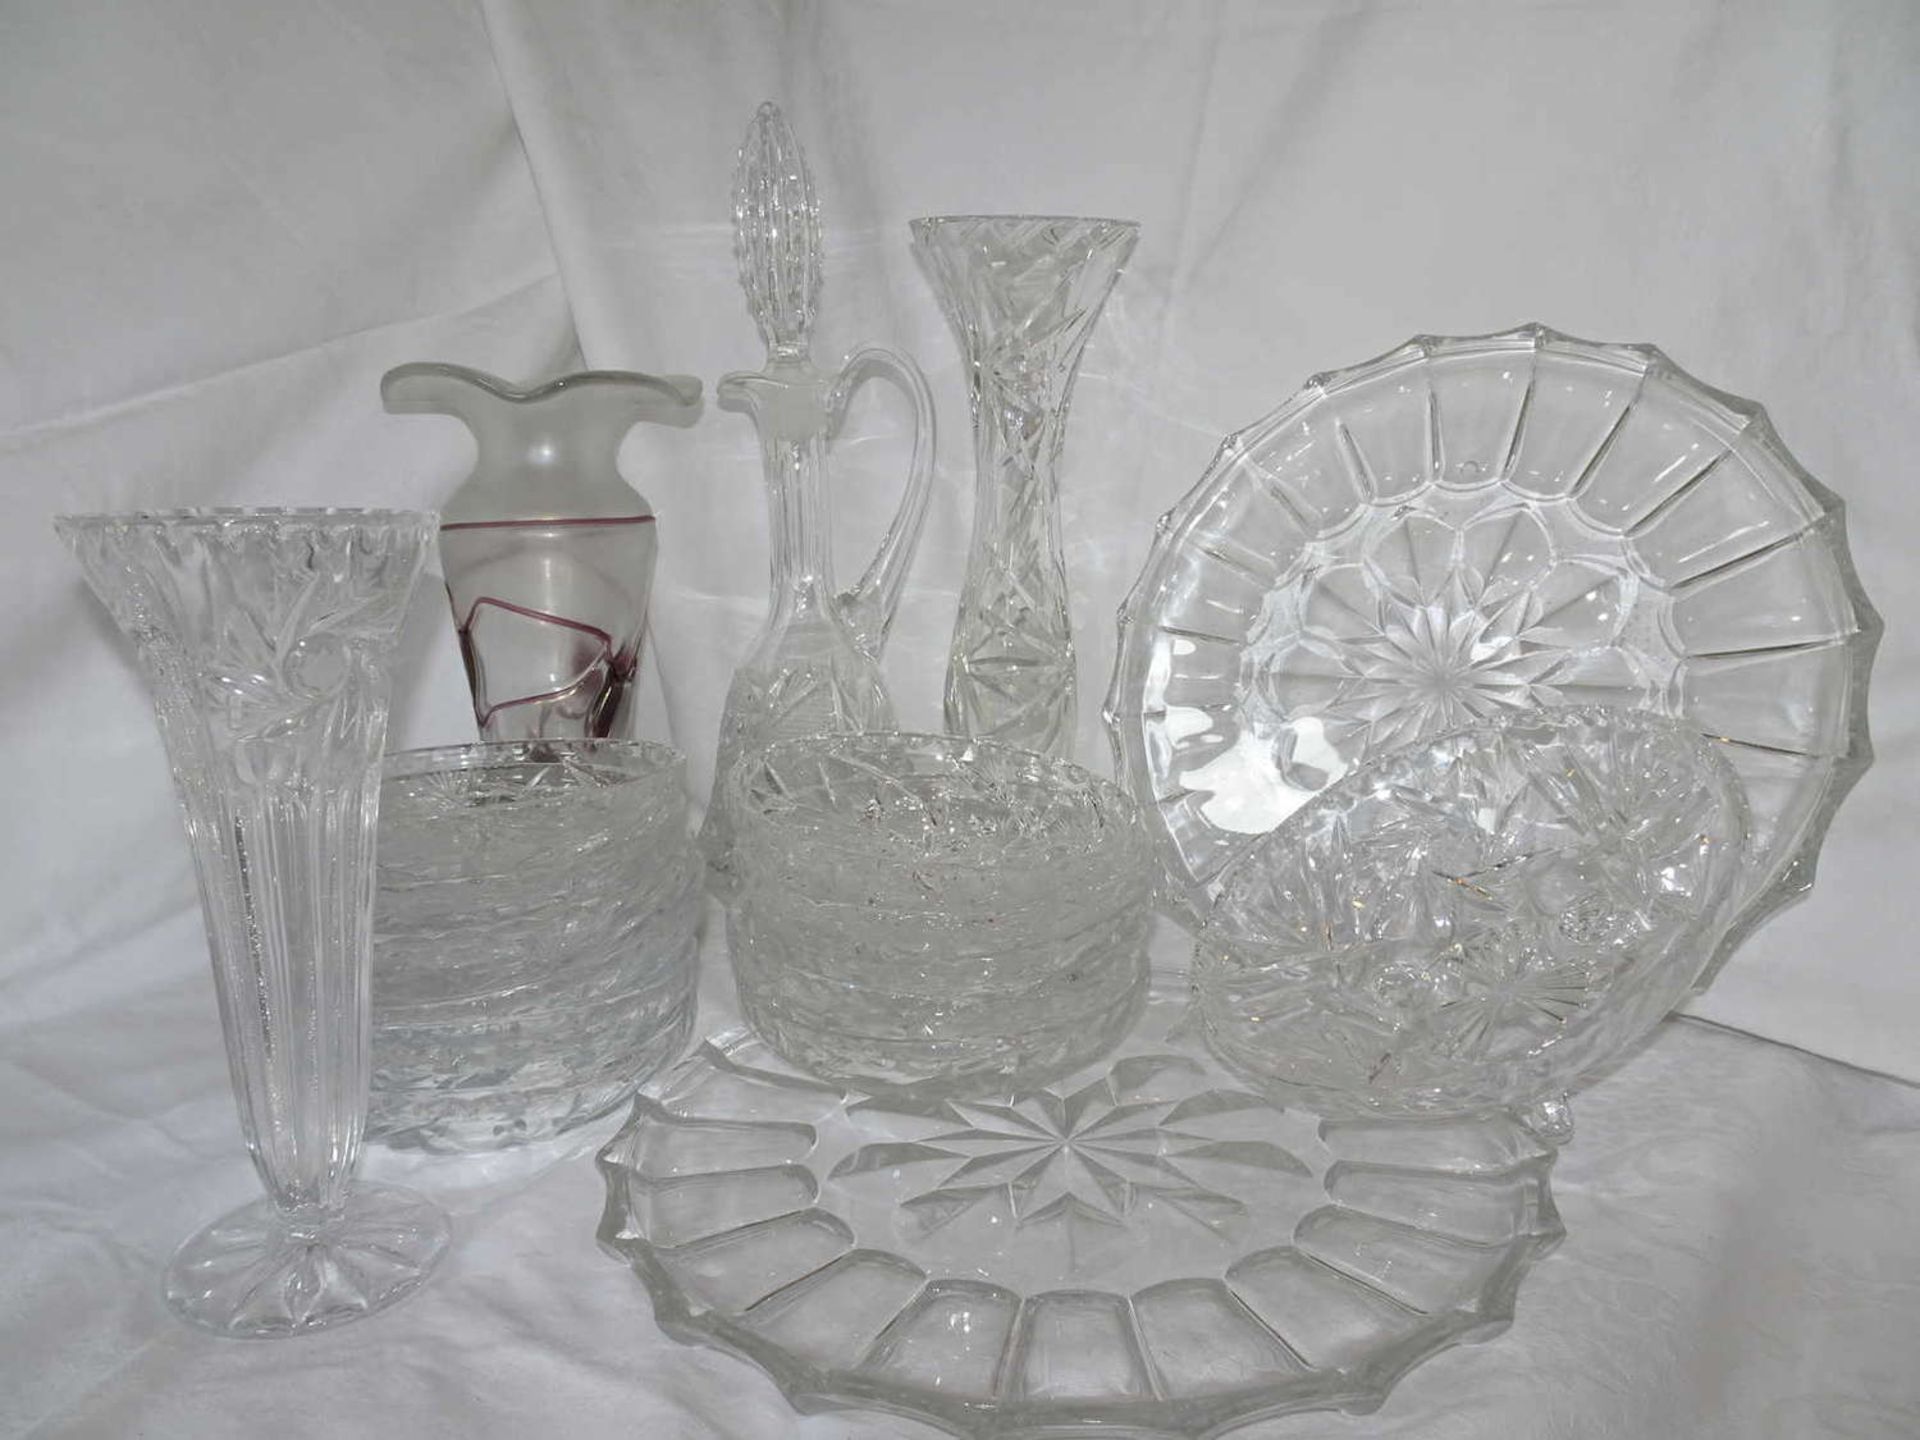 Großes Lot Bleikristall, dabei Stöpselflasche, Kuchenplatten, Vasen, Glasvase mit Einschmelzungen,